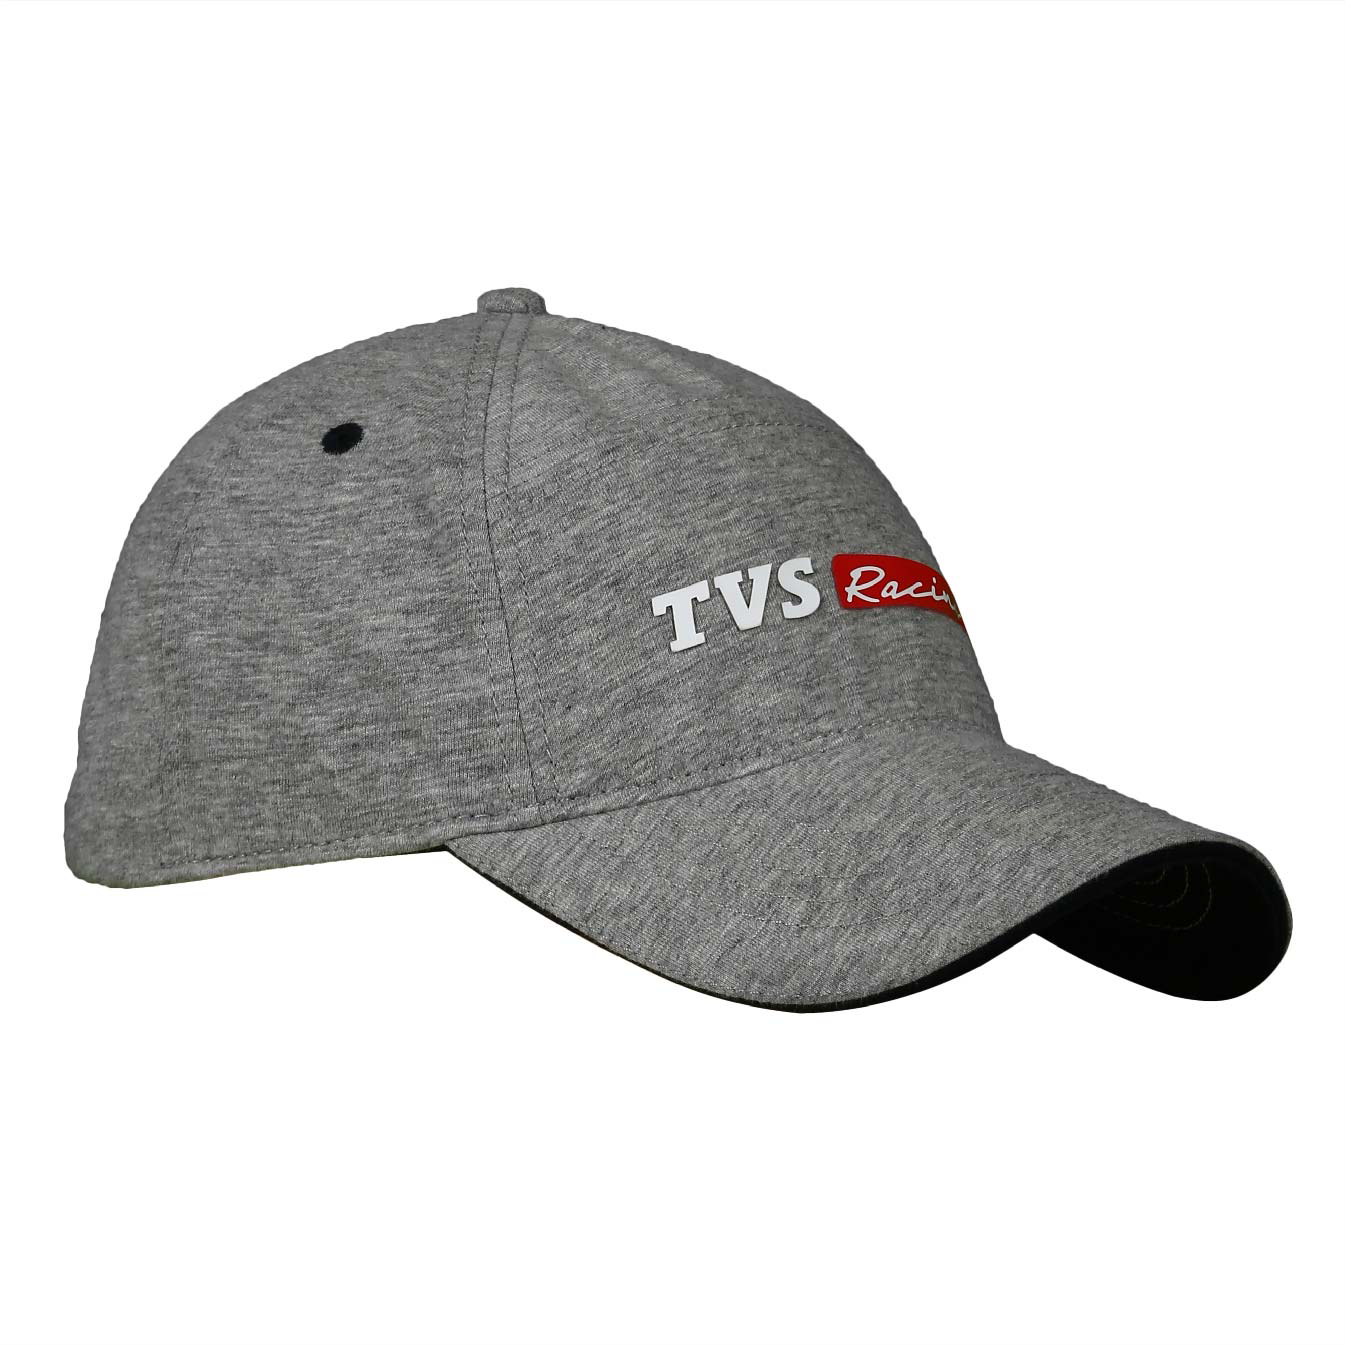  TVS Racing Cap - Blue